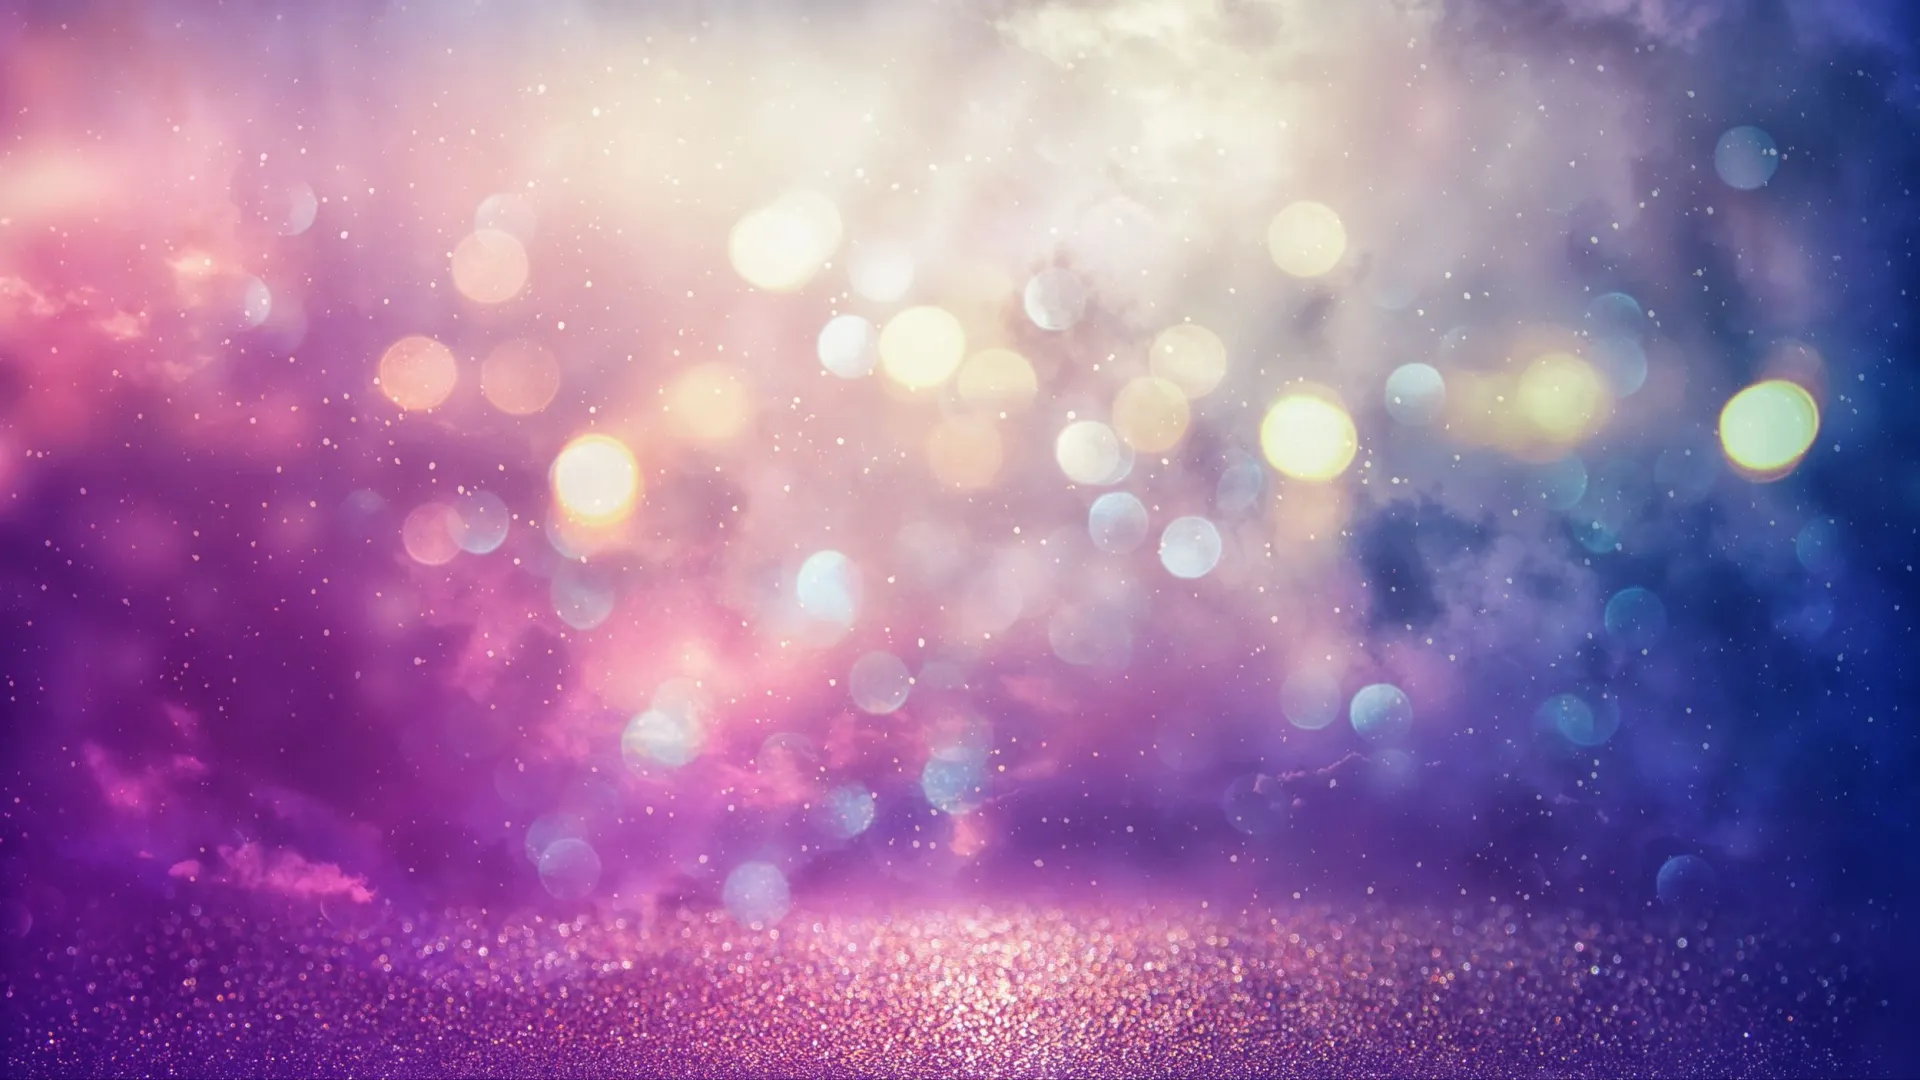 Самый мистический цвет — фиолетовый. Фото: tomertu / Shutterstock / Fotodom